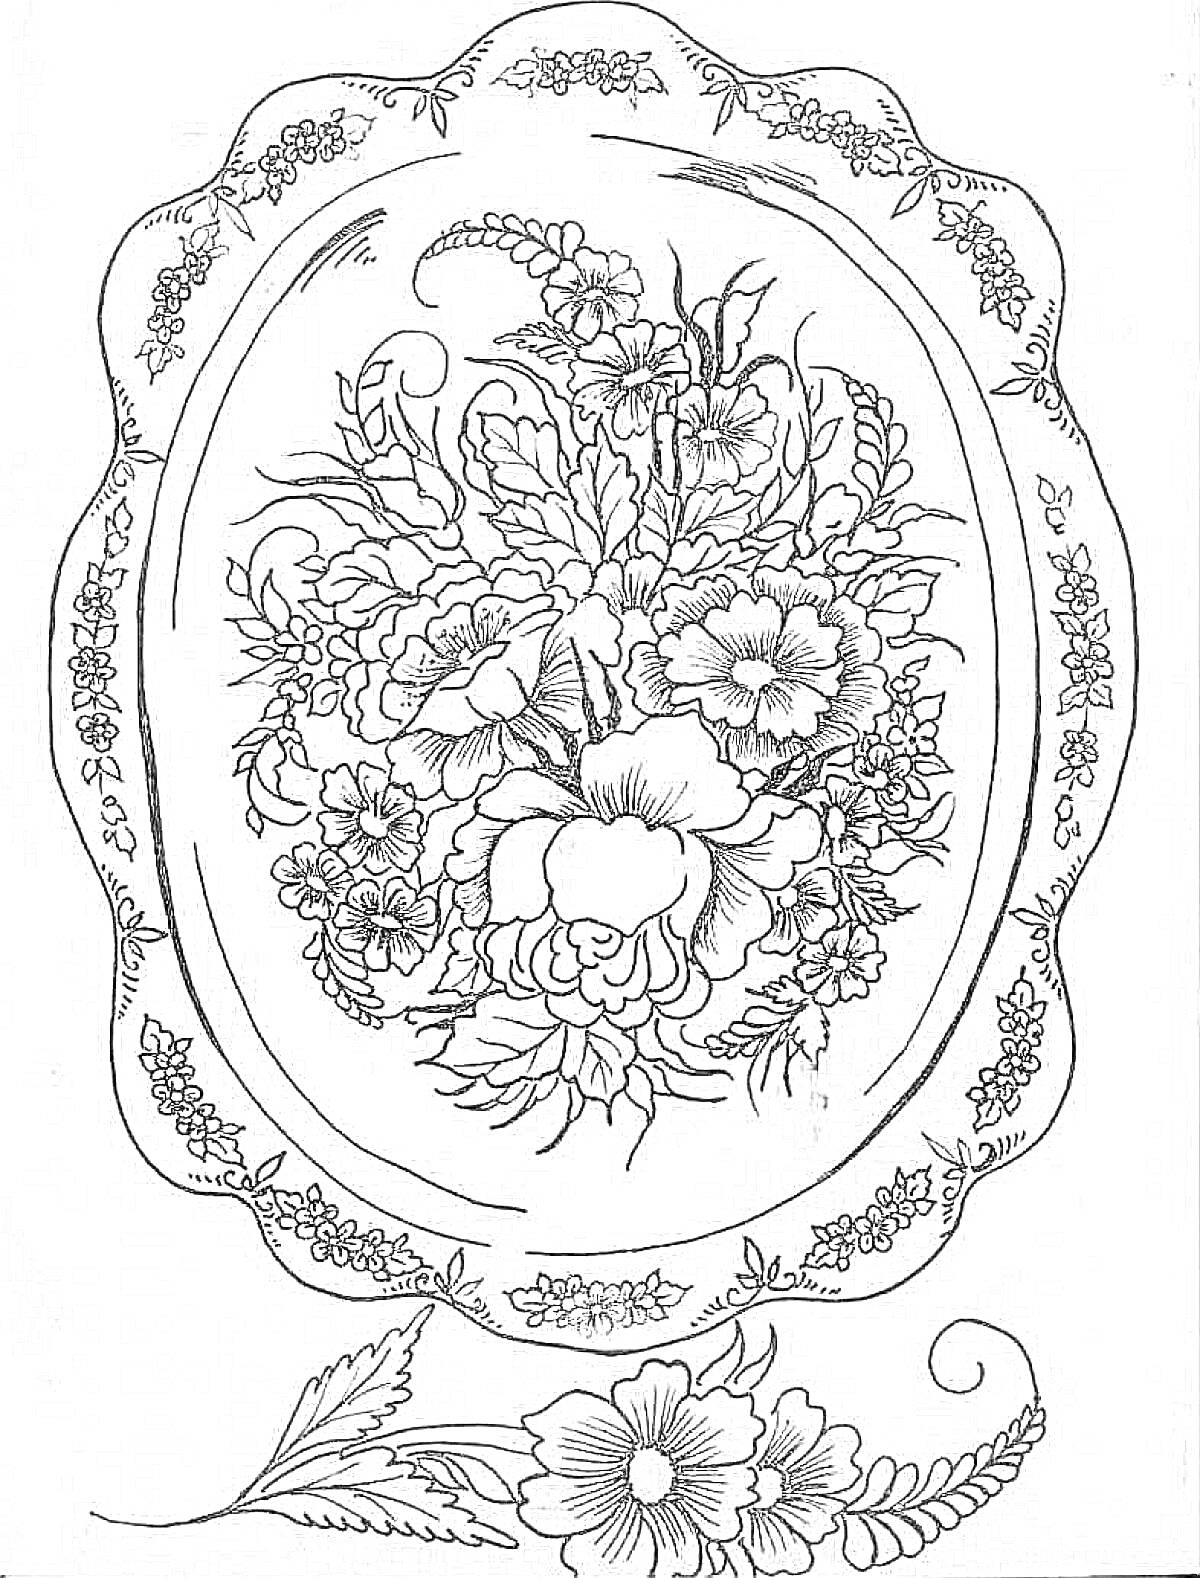 Раскраска Поднос с цветочным узором, Жостовская роспись - цветы и листья в овале